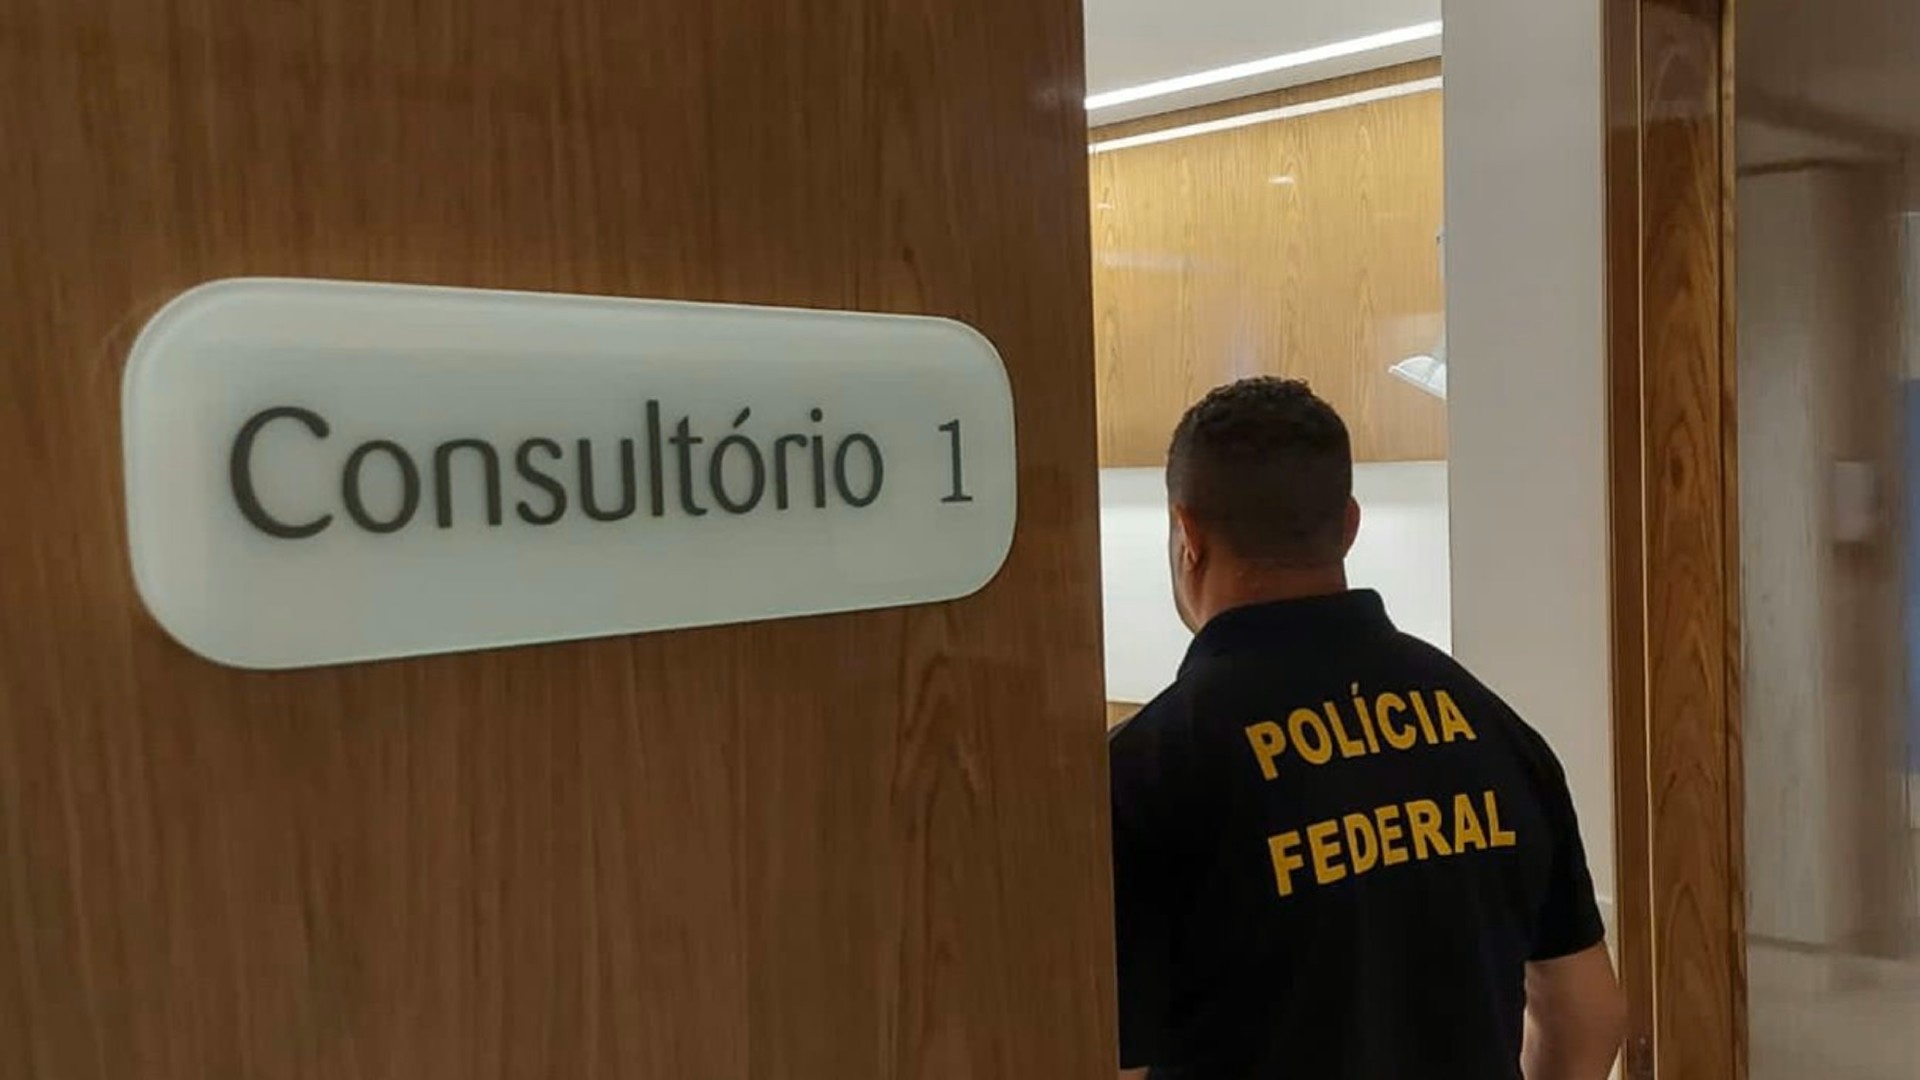 Médicos concursados são investigados por suspeita de fraude no ponto em Porto Alegre, diz PF